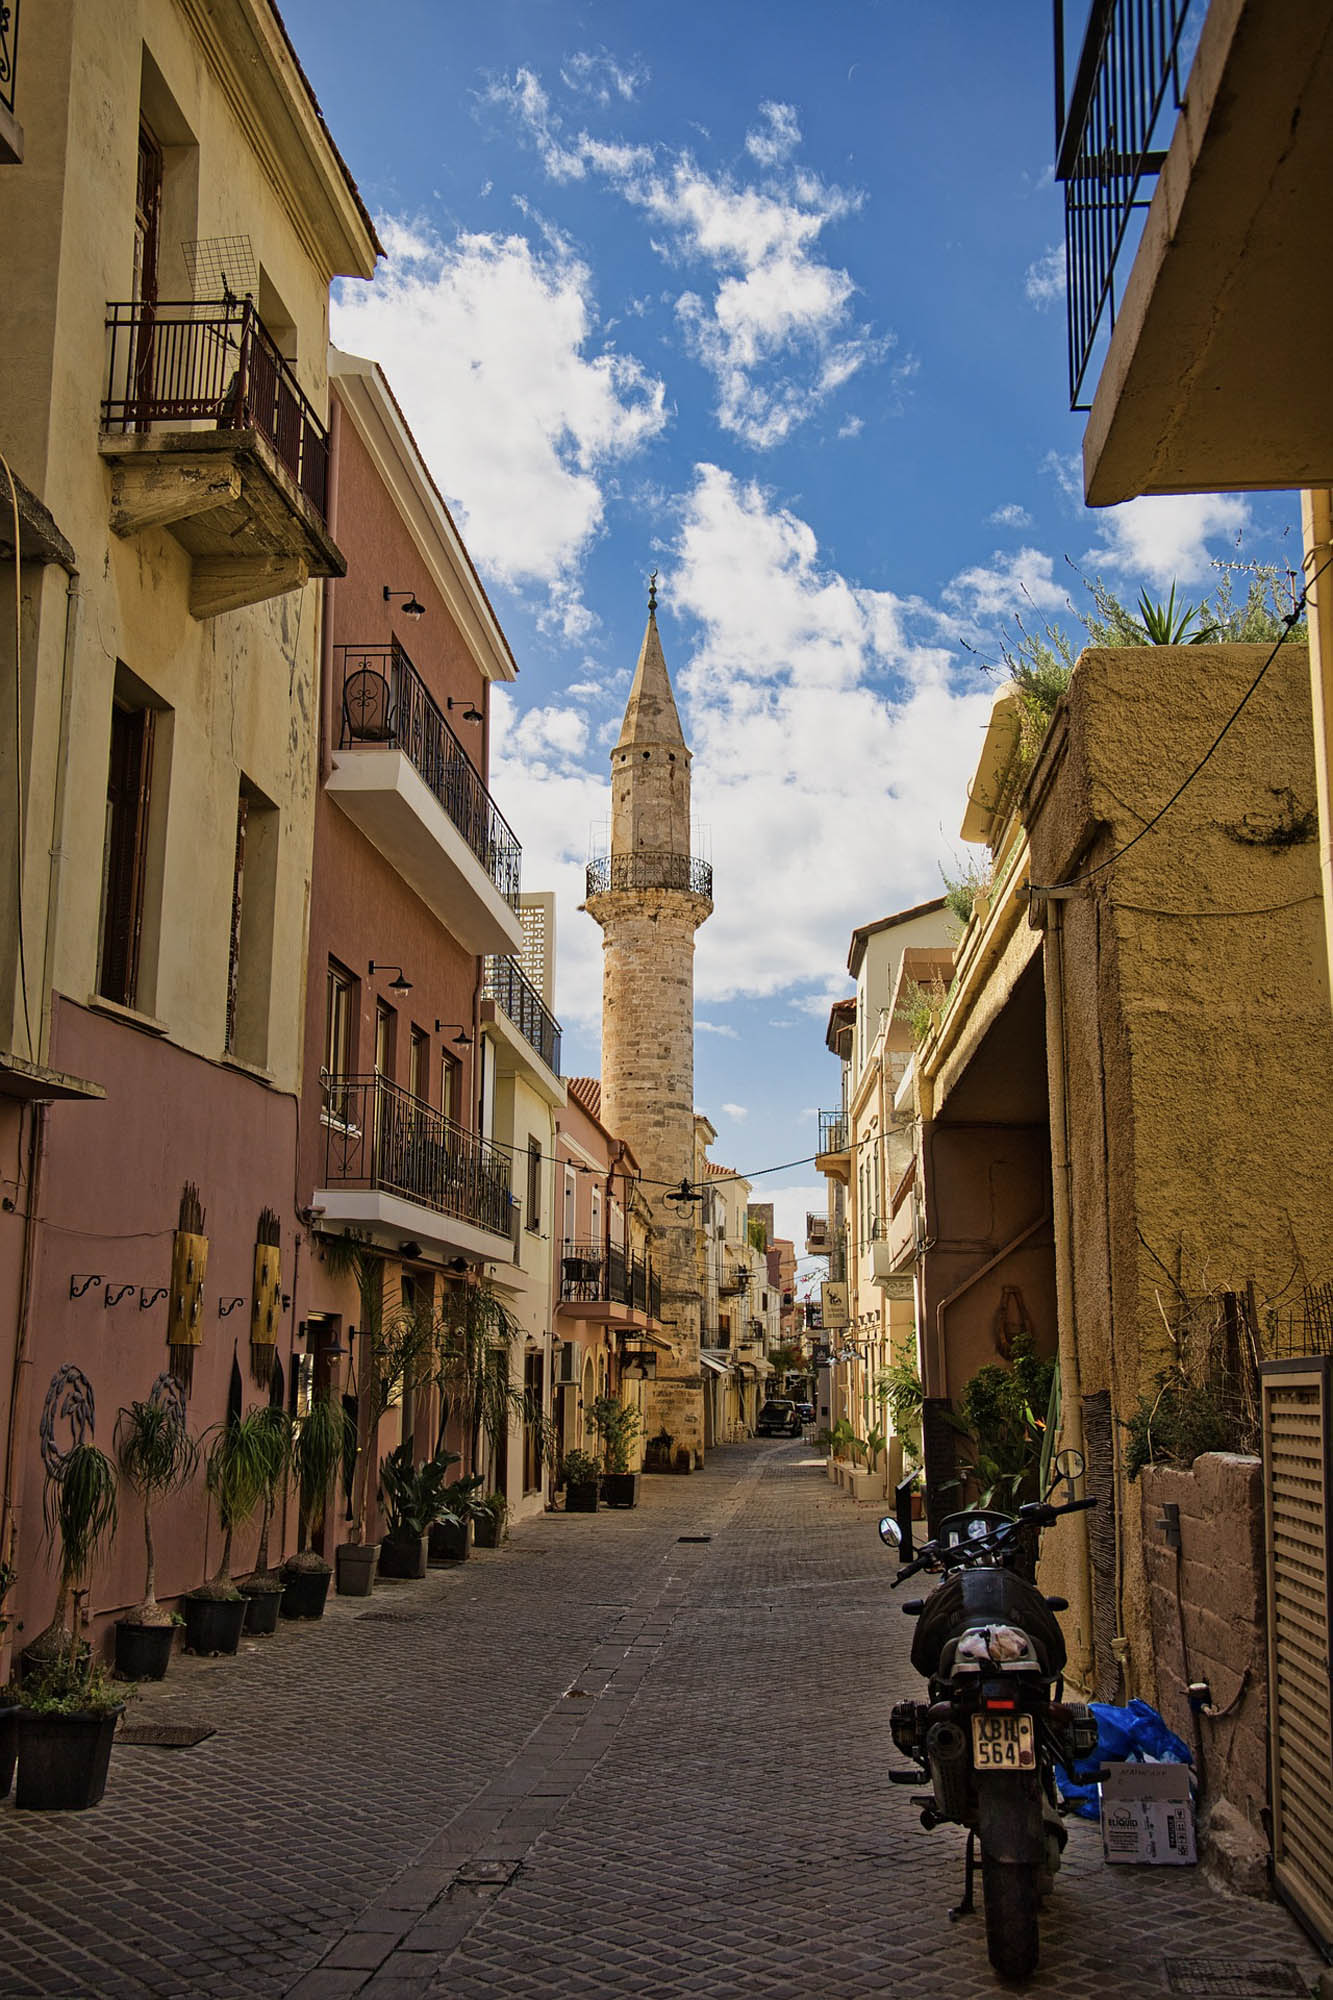 miasto chania, w tle widać minaret